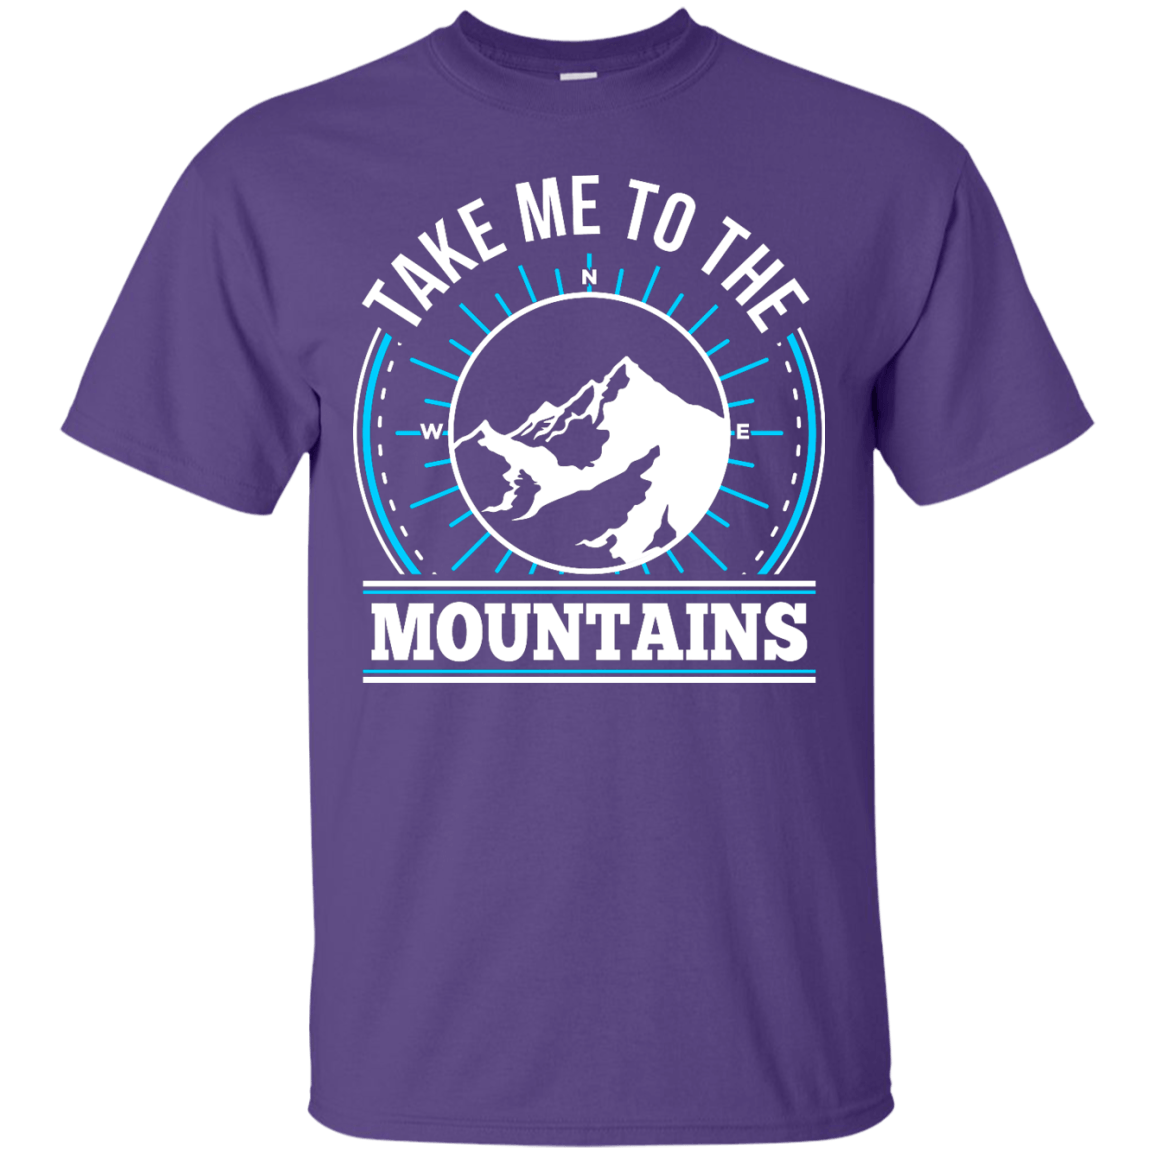 Take Me To The Mountains Tees - Powderaddicts